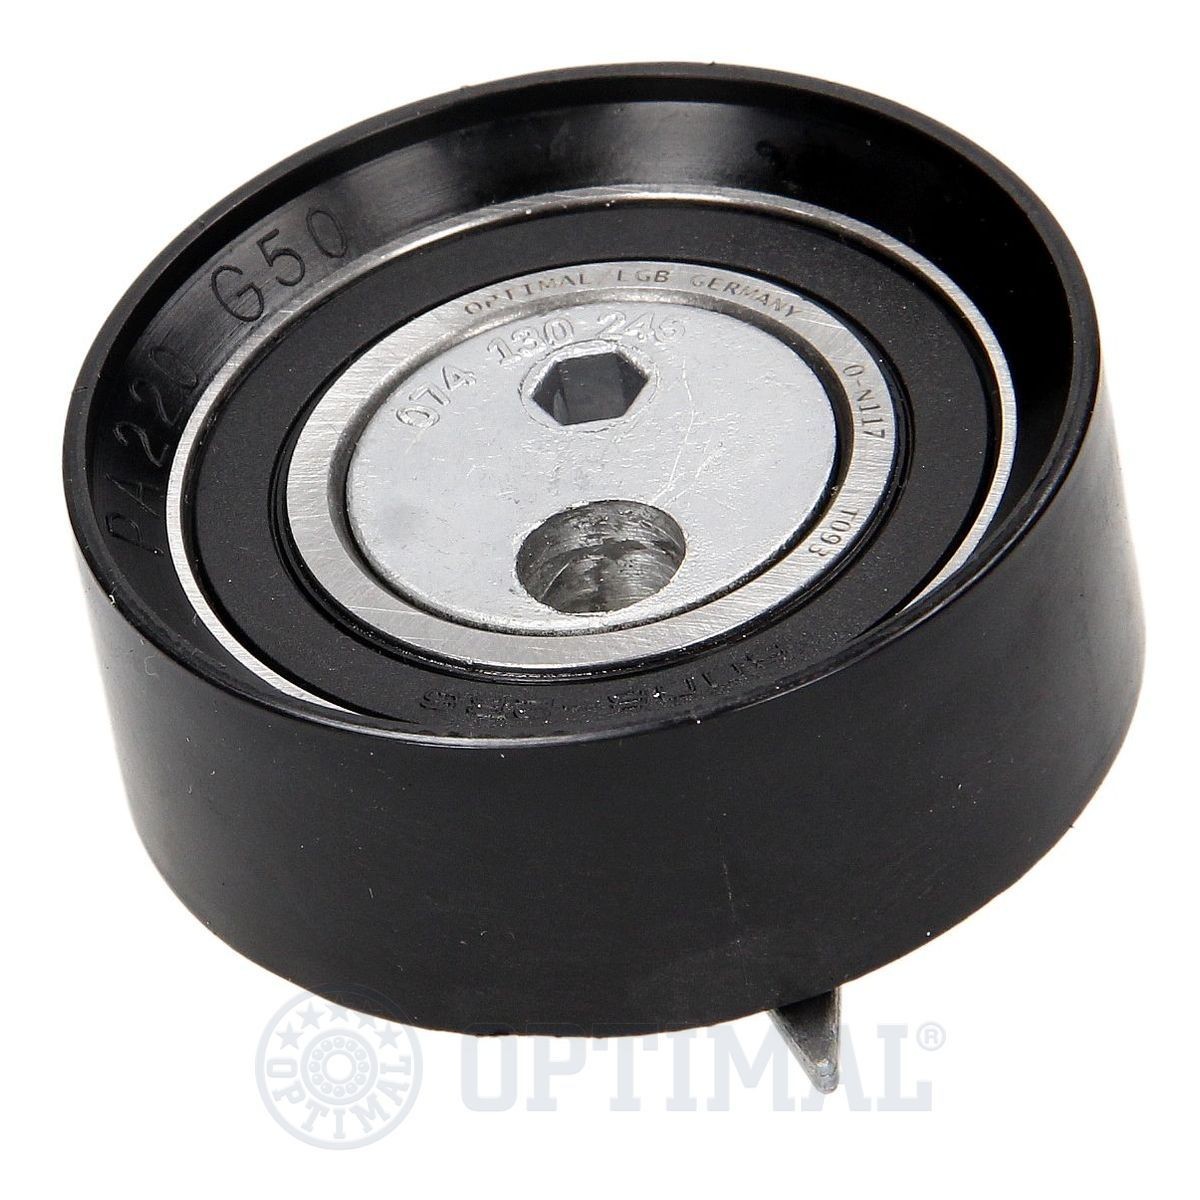 OPTIMAL 0-N117 Timing belt tensioner pulley